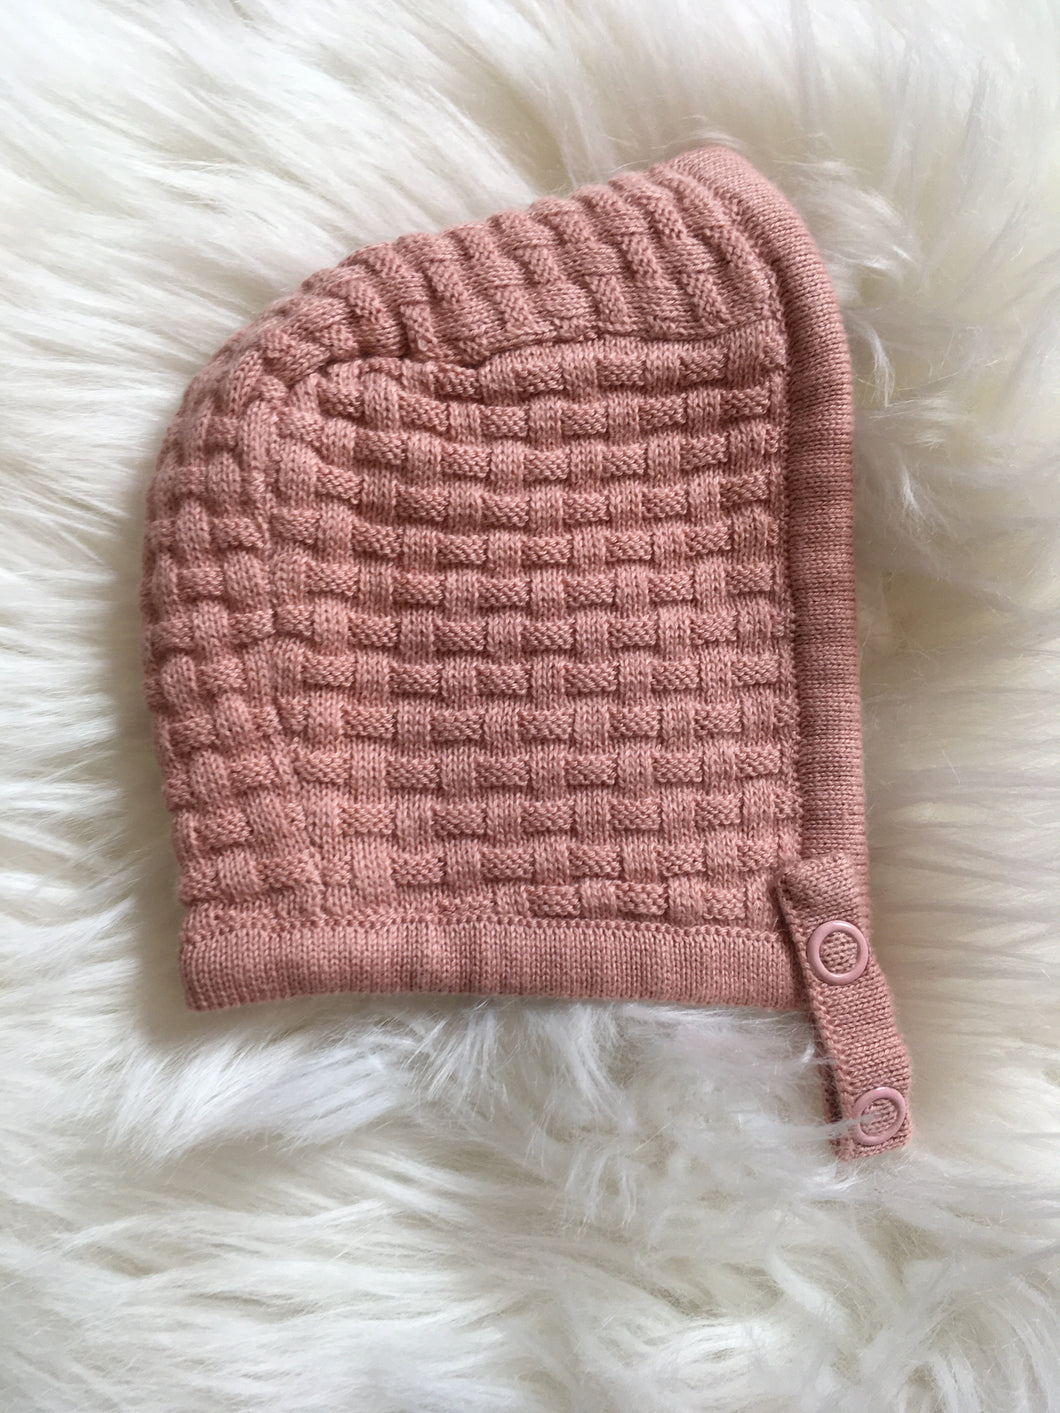 Fixoni Textured Knit Dusty Pink Bonnet: Sizes 0M - 12M